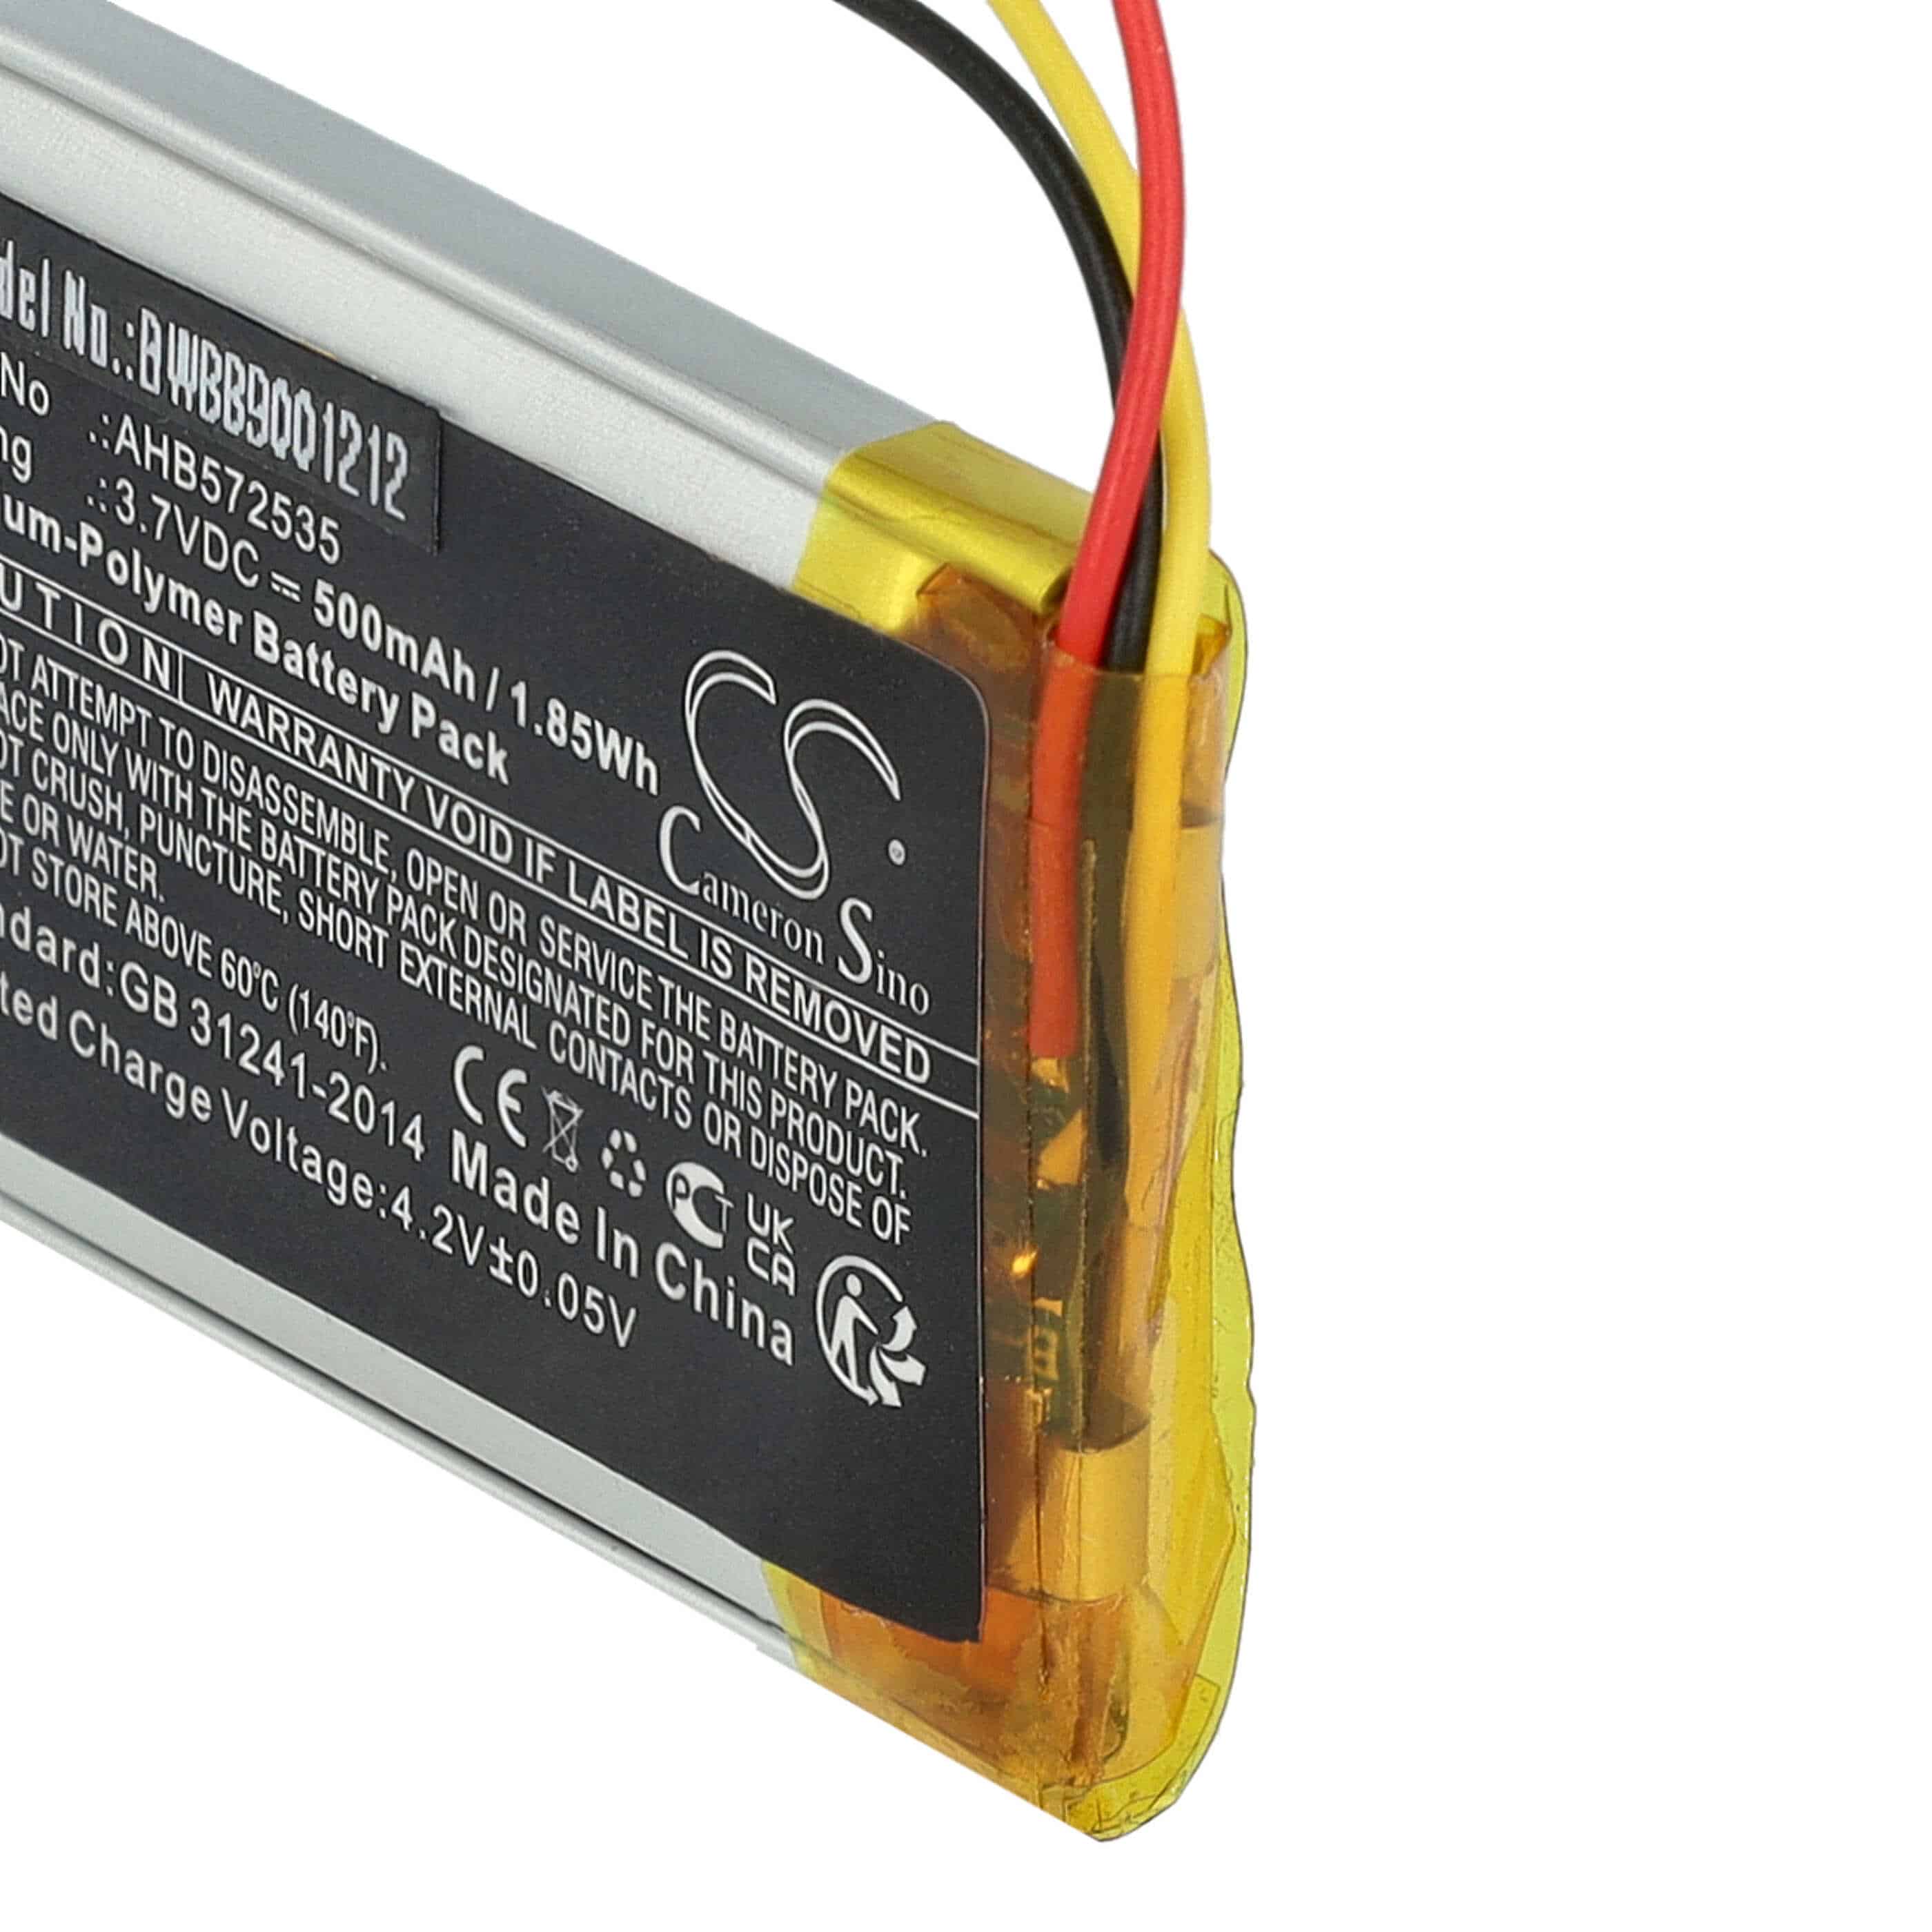 Batterie remplace Bose AHB572535 pour casque audio - 500mAh 3,7V Li-polymère